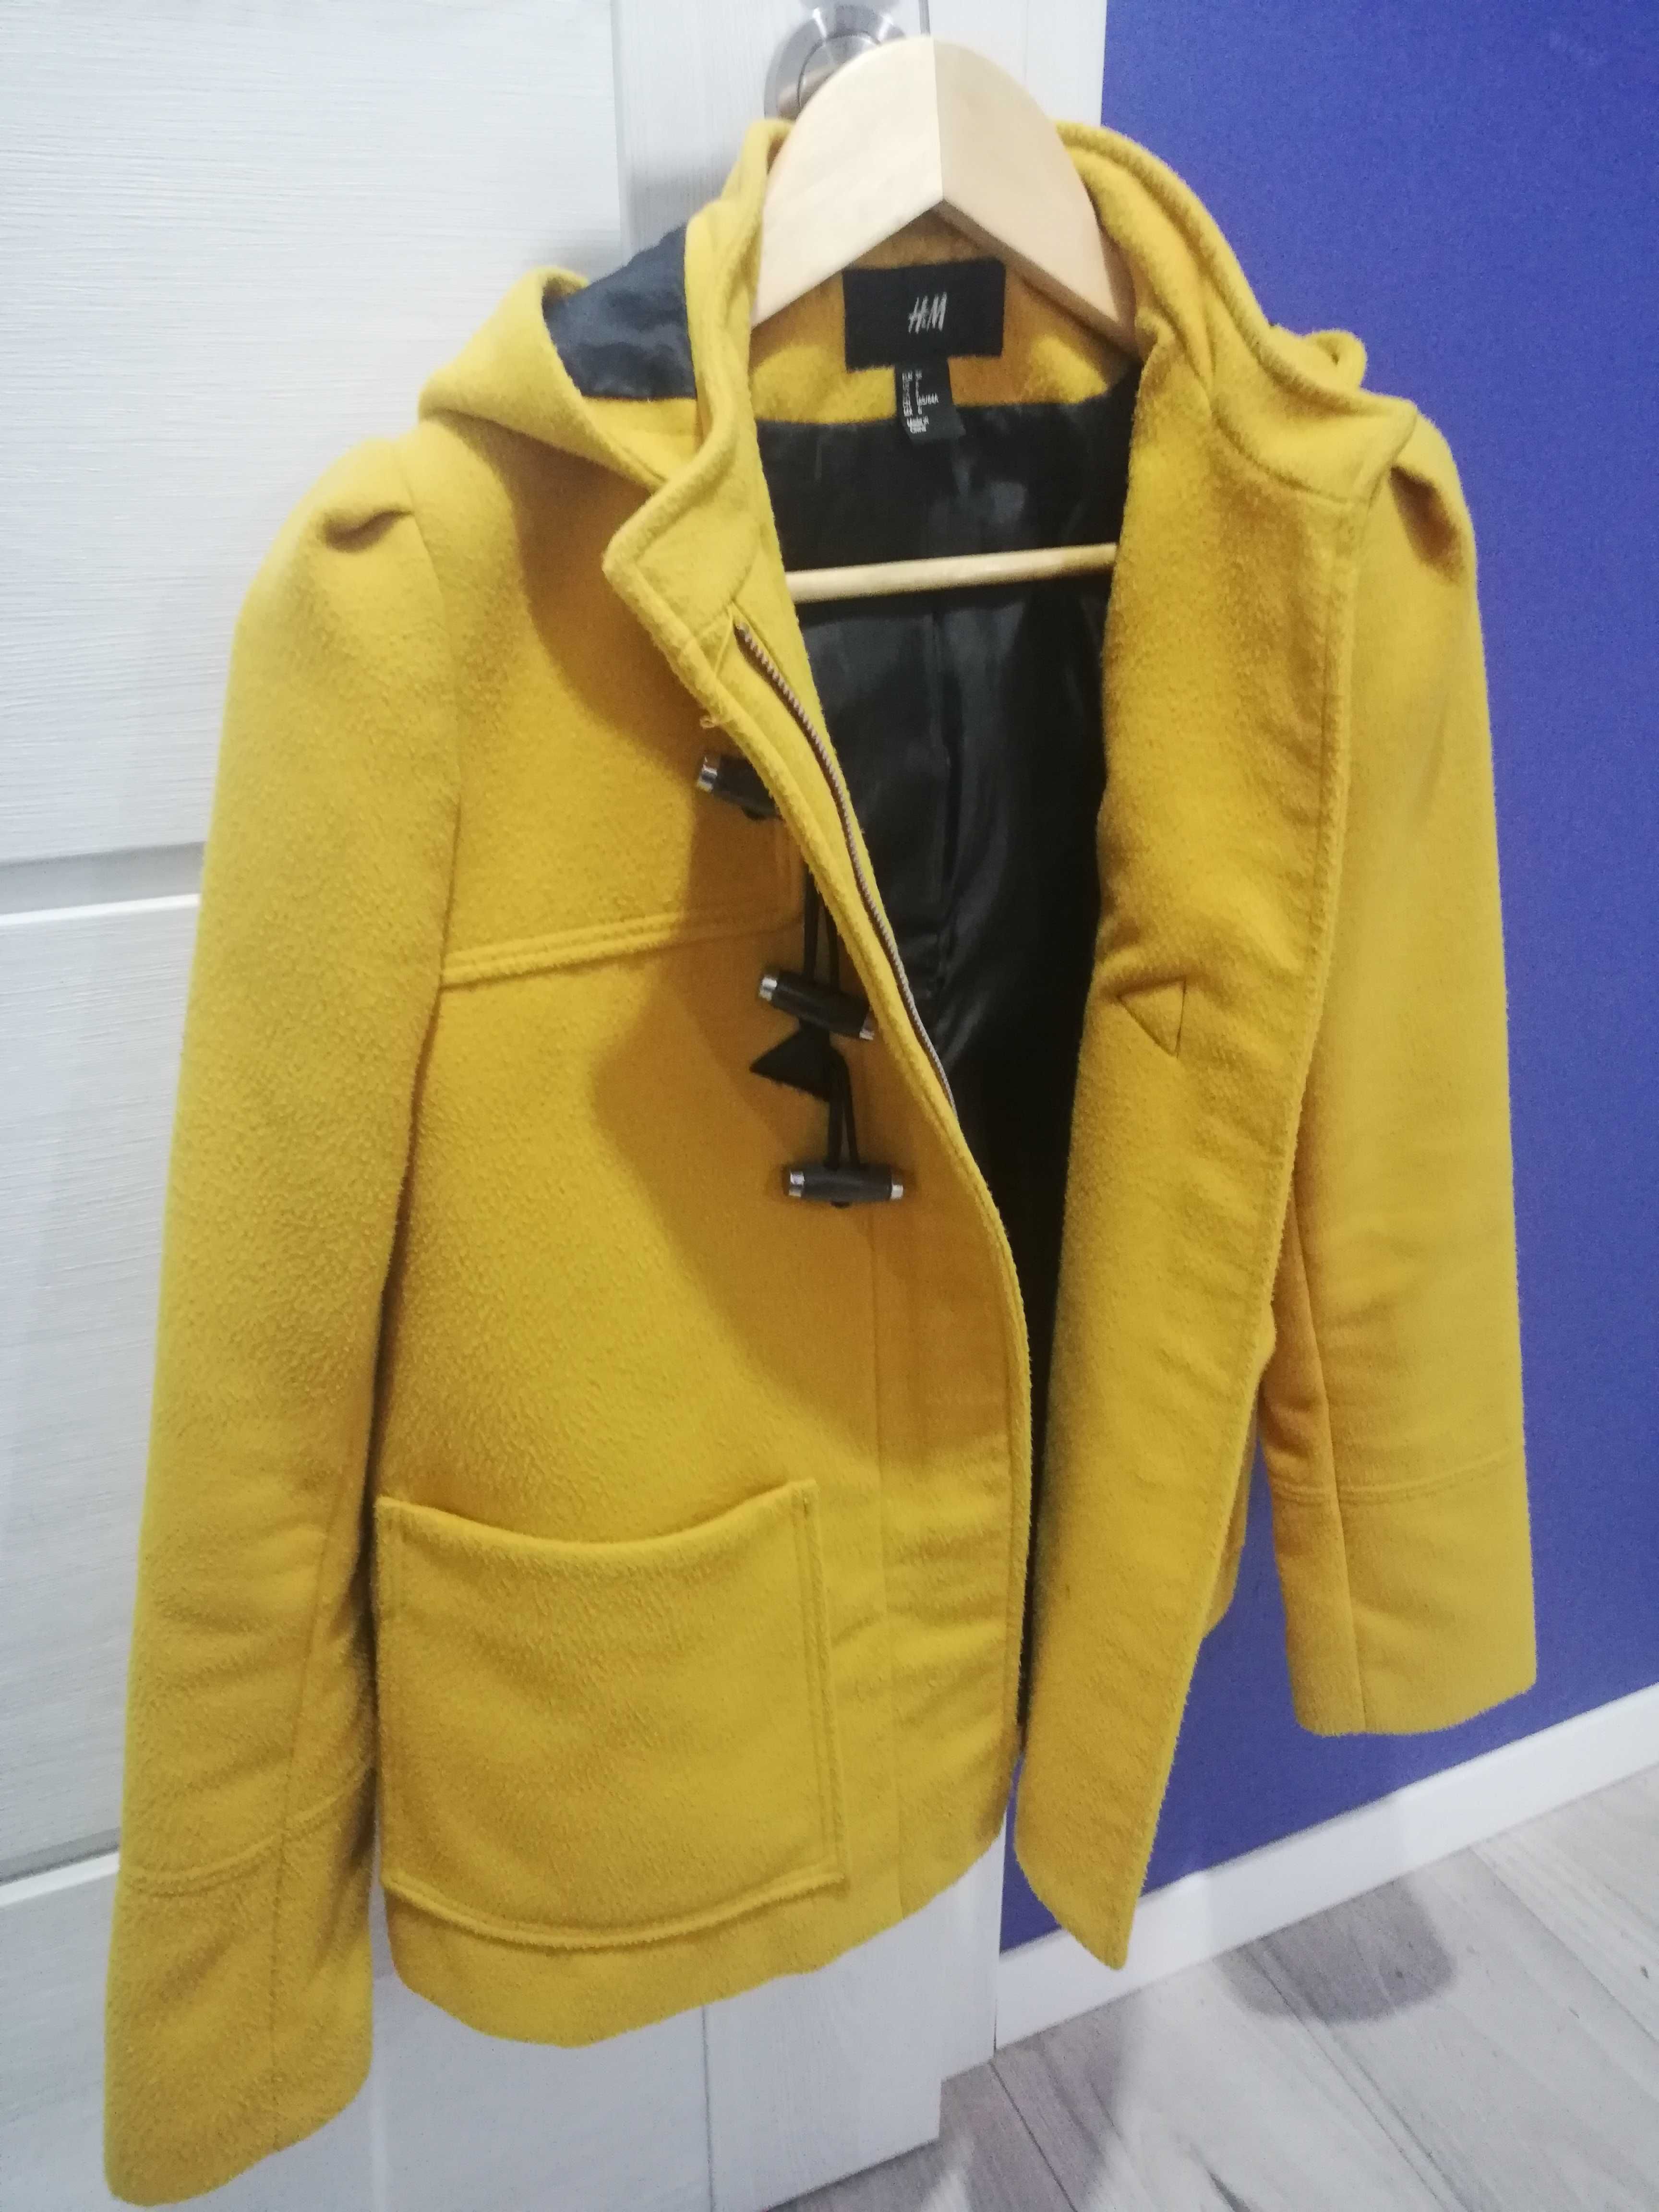 Płaszcz plaszczyk damski żółty kurtka wiosenna